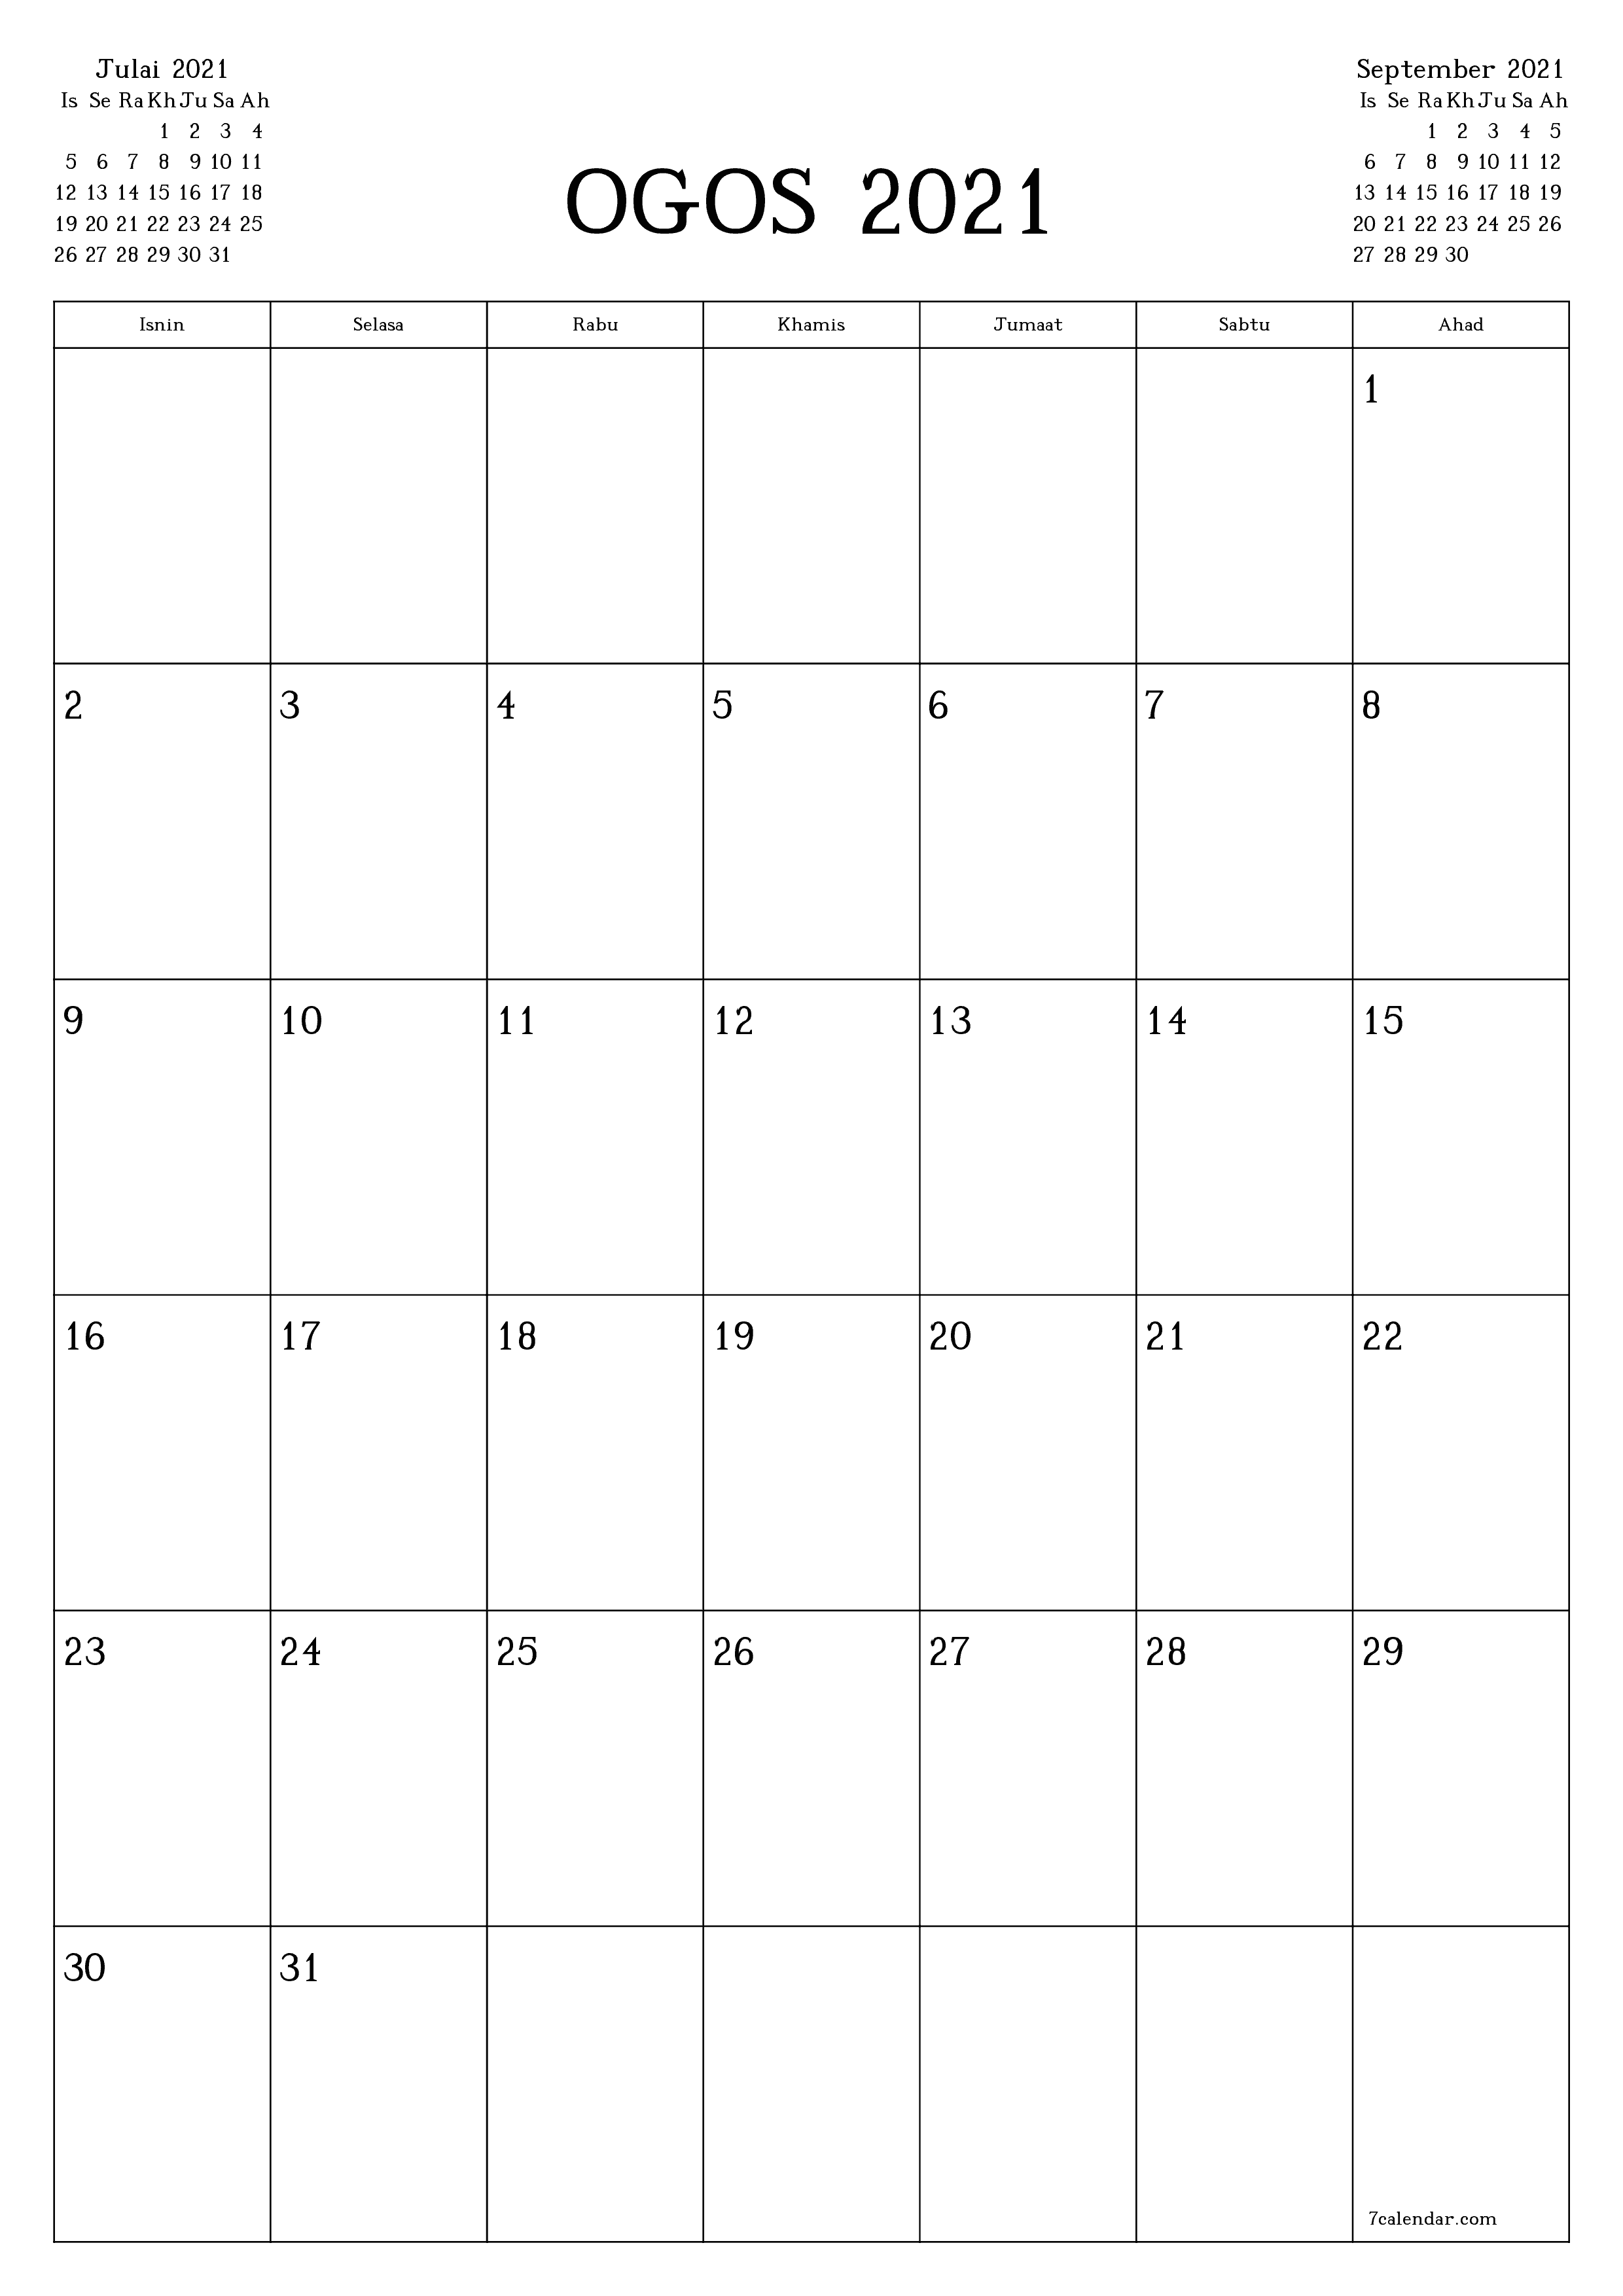 2021 kalendar ogos 2021 Calendar